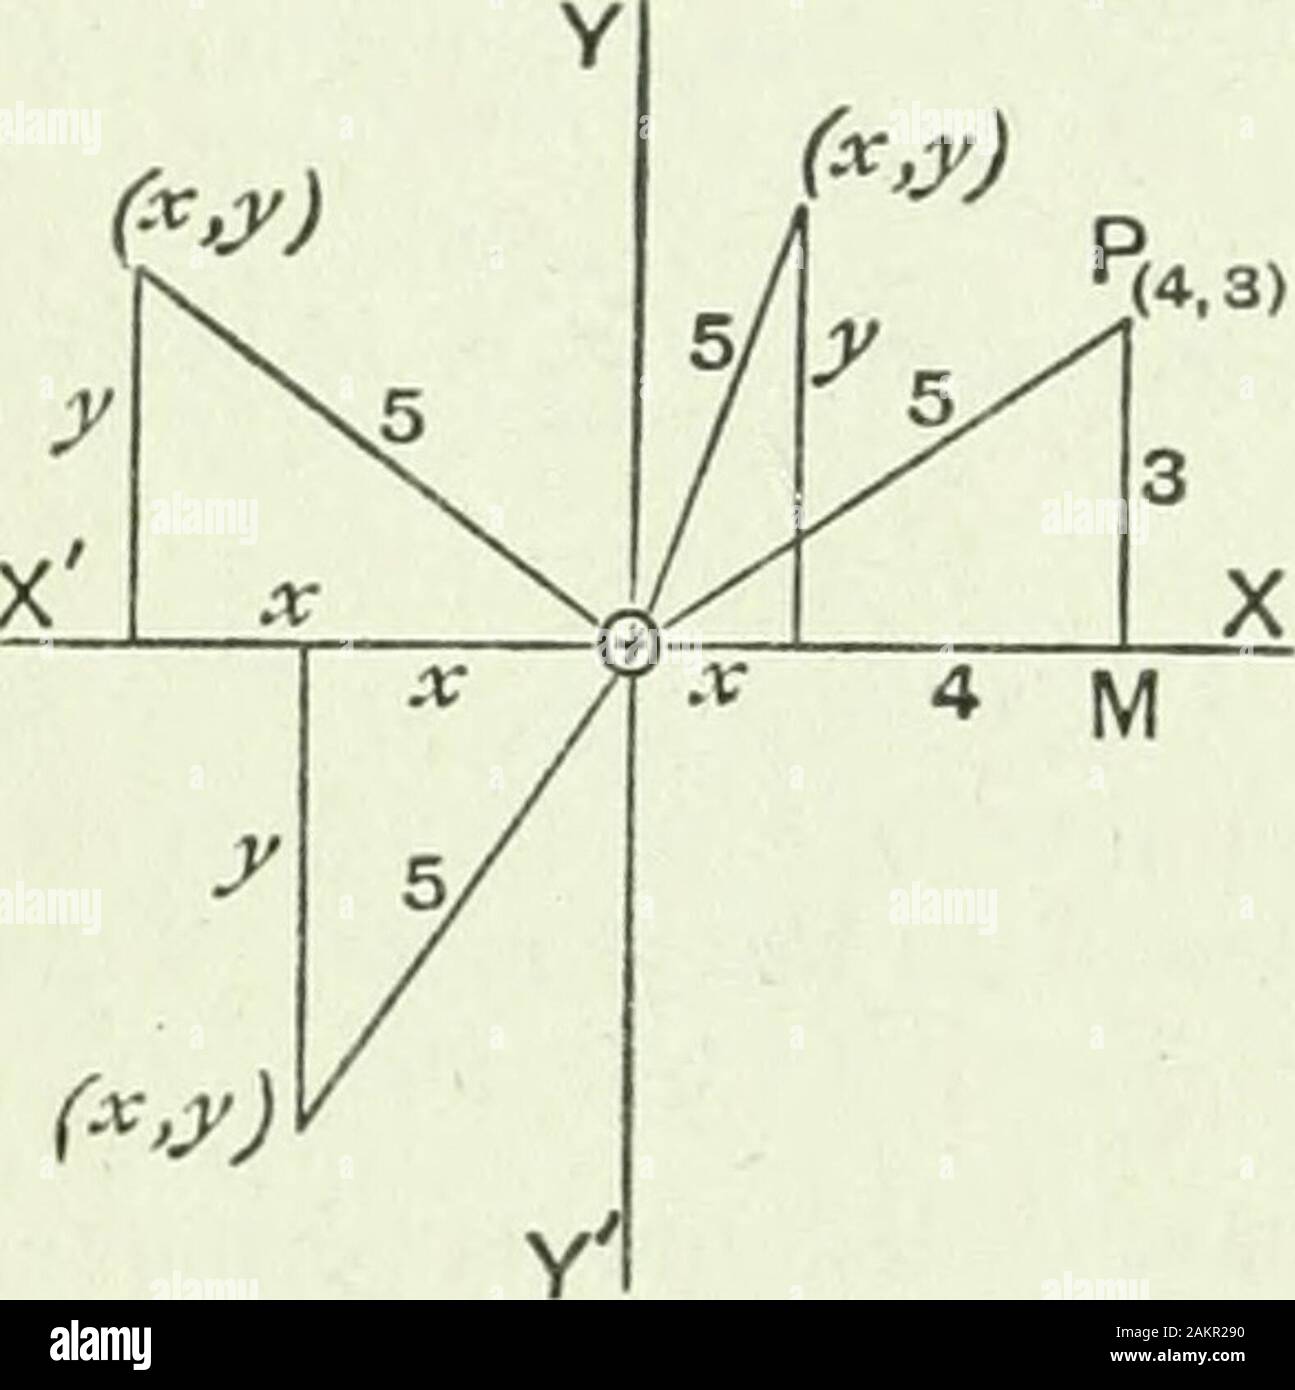 High school algebra . gle est 1161 mètres carrés, et son perimeteris 140  yards. Trouver les dimensions. 33. Résoudre 1 + 1 = = -3, i - i - -03. X y  x y^